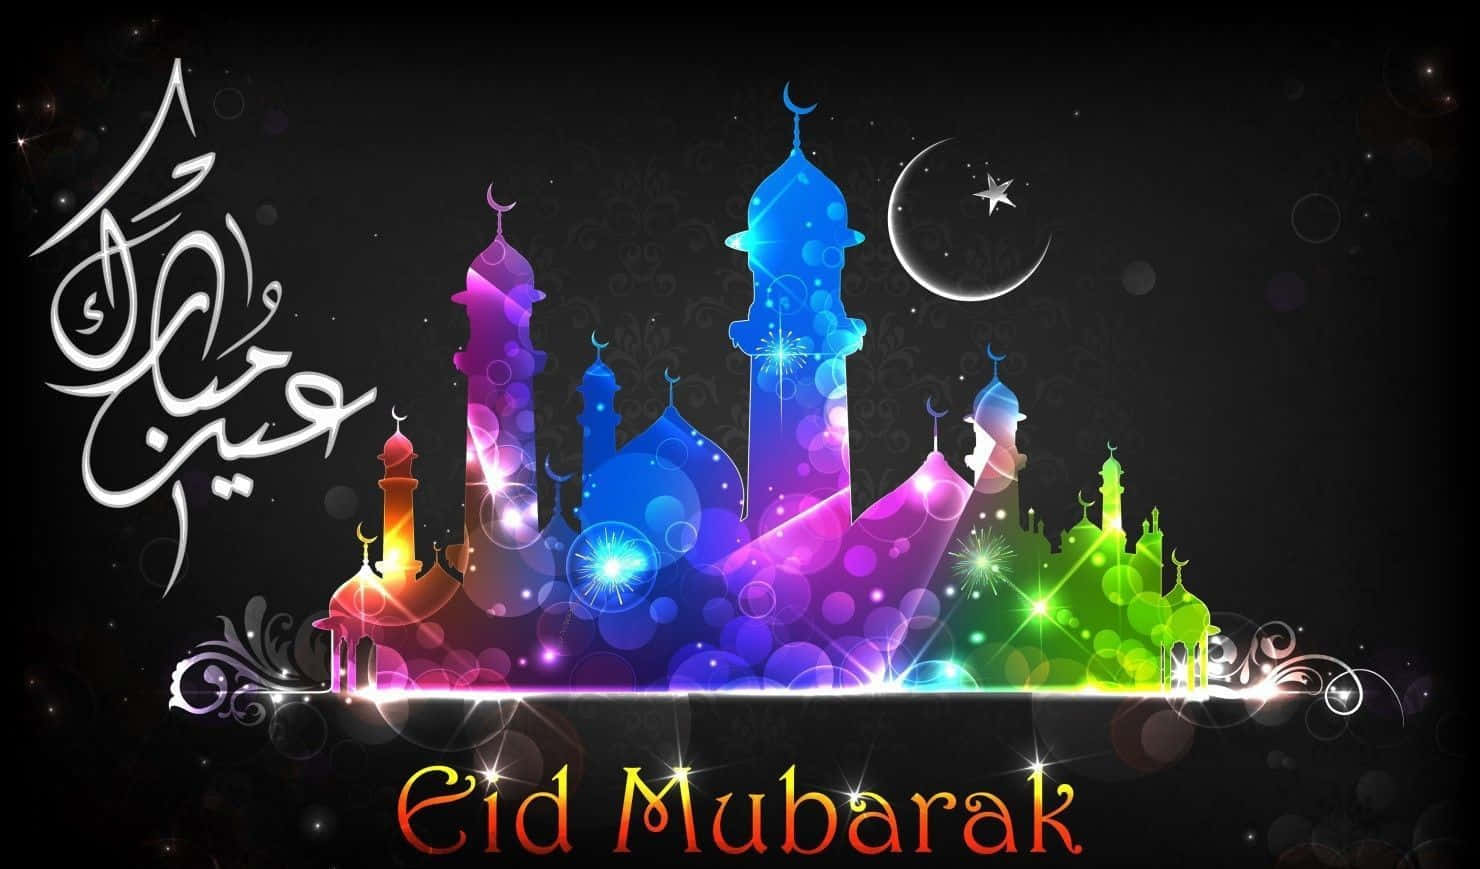 Fejrånden Af Eid Mubarak Med Venner Og Familie